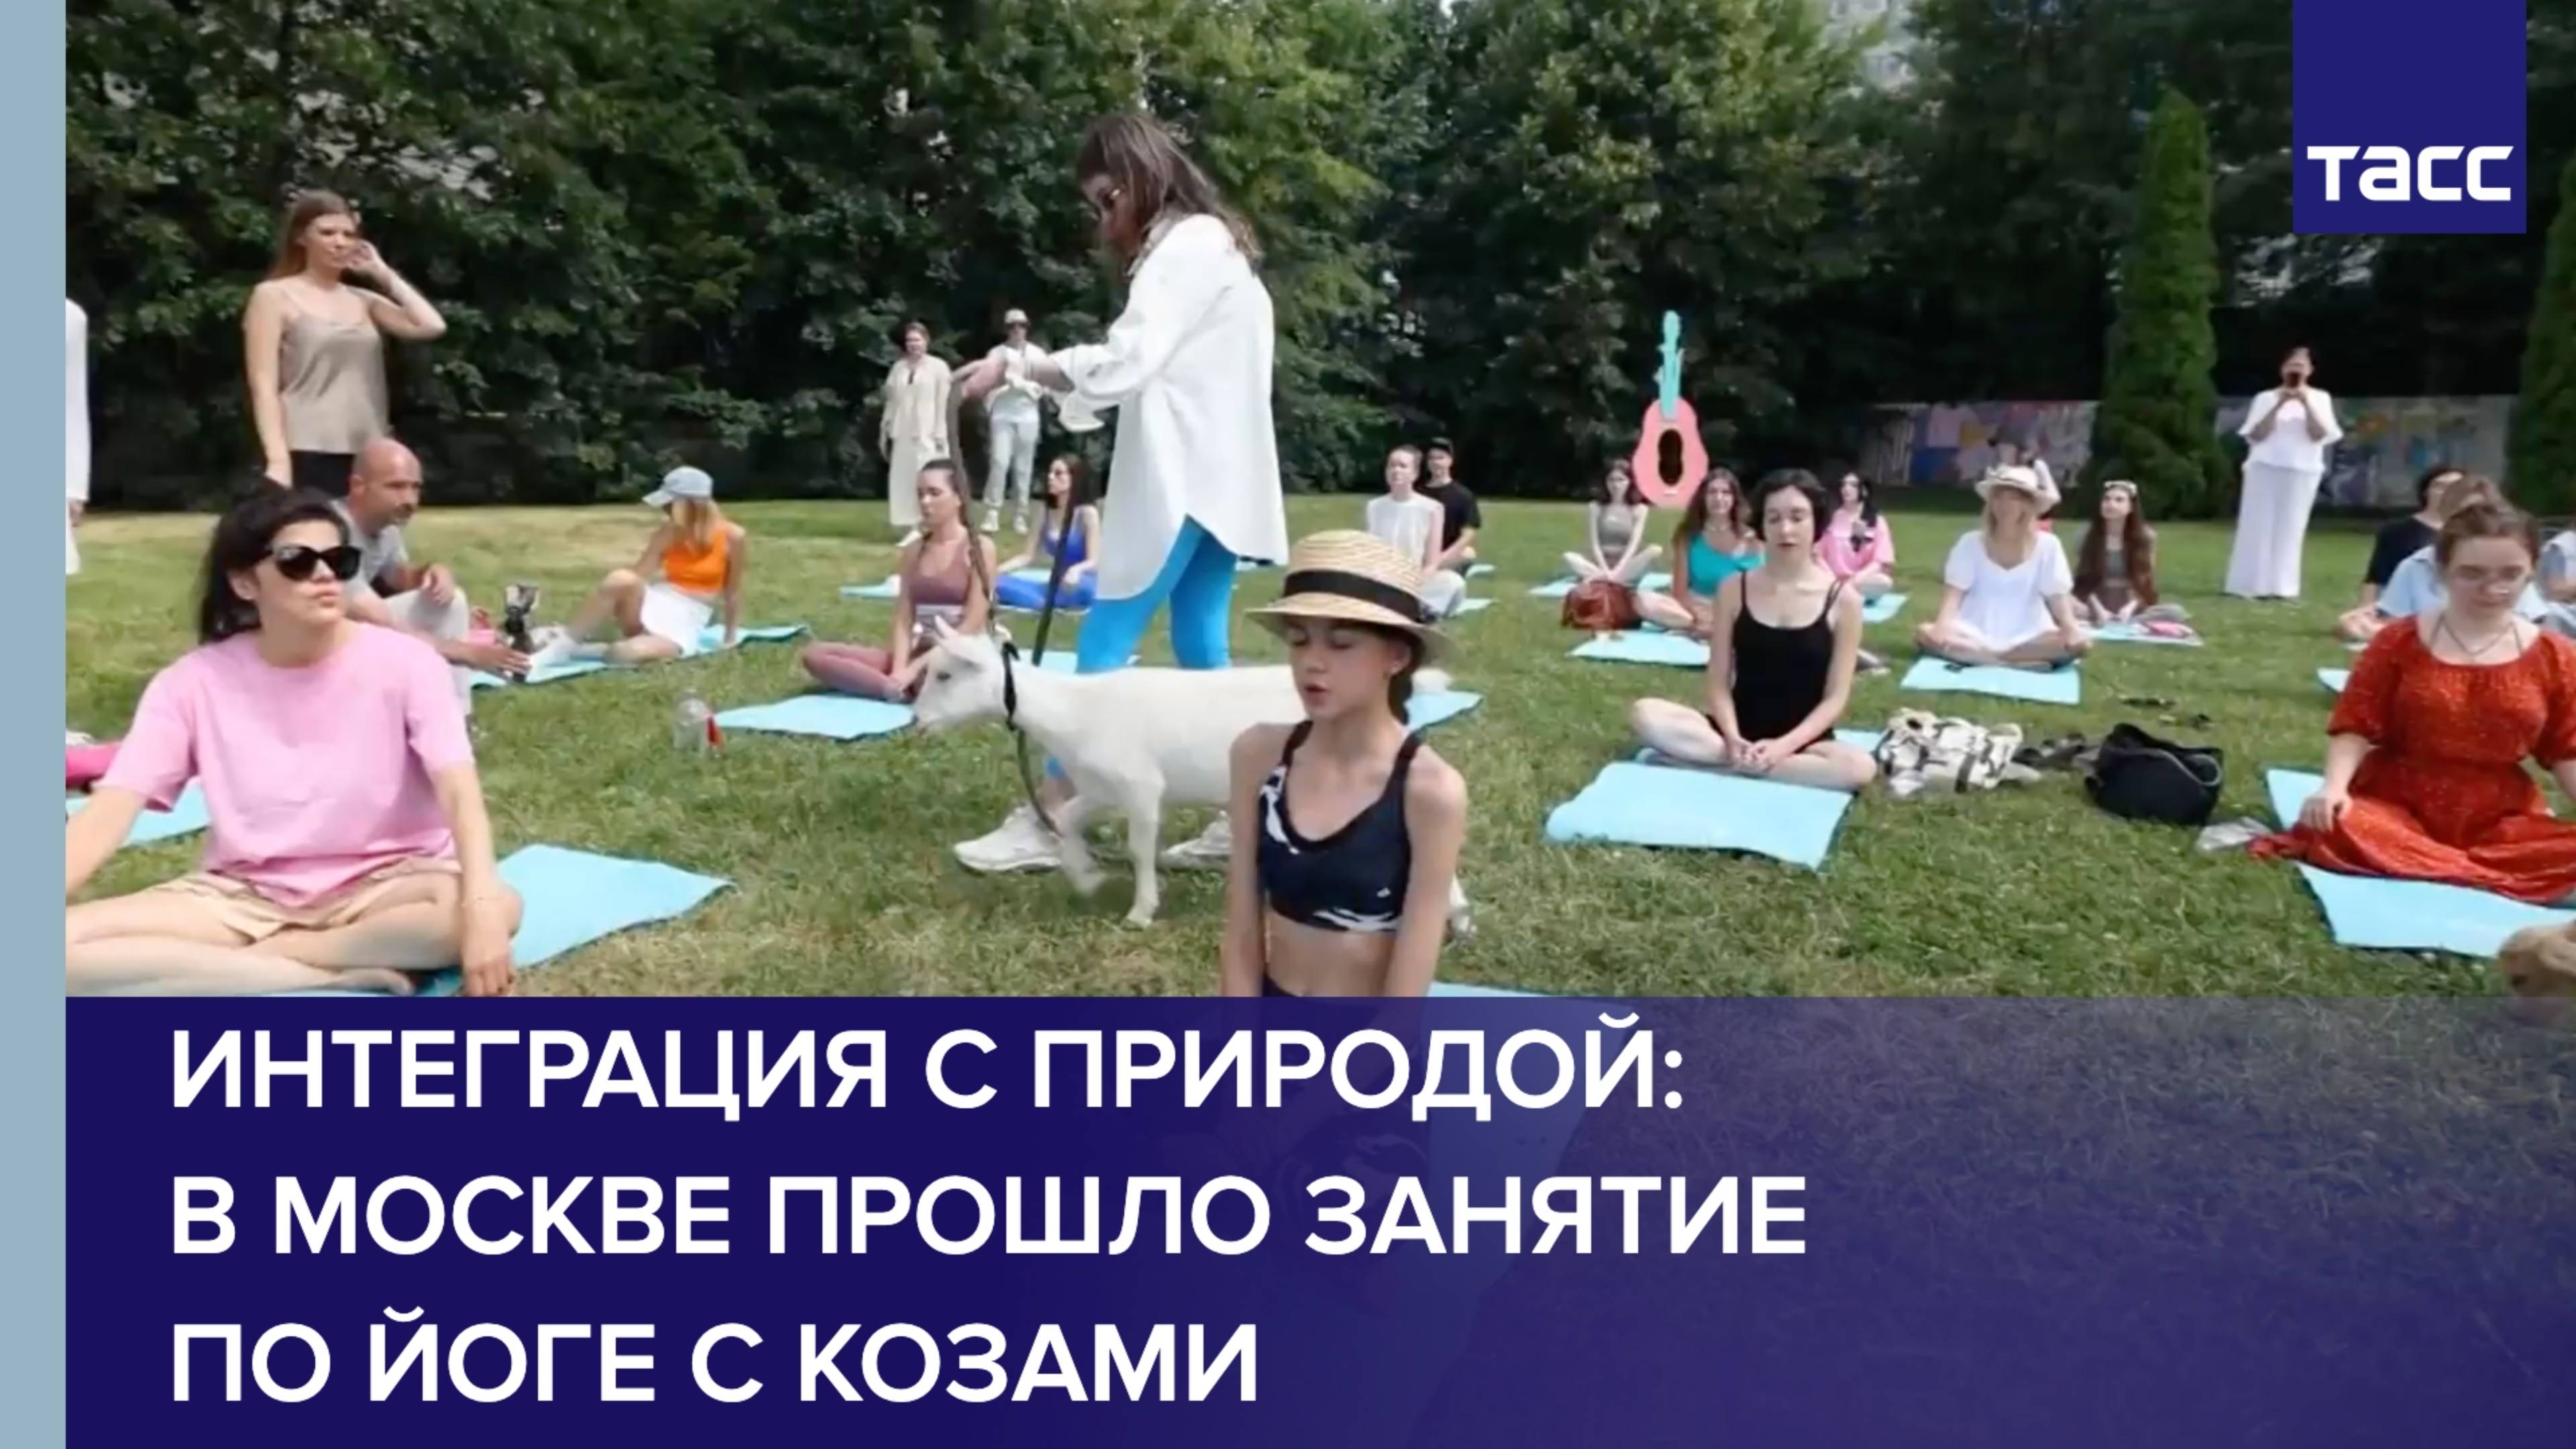 Интеграция с природой: в Москве прошло занятие по йоге с козами